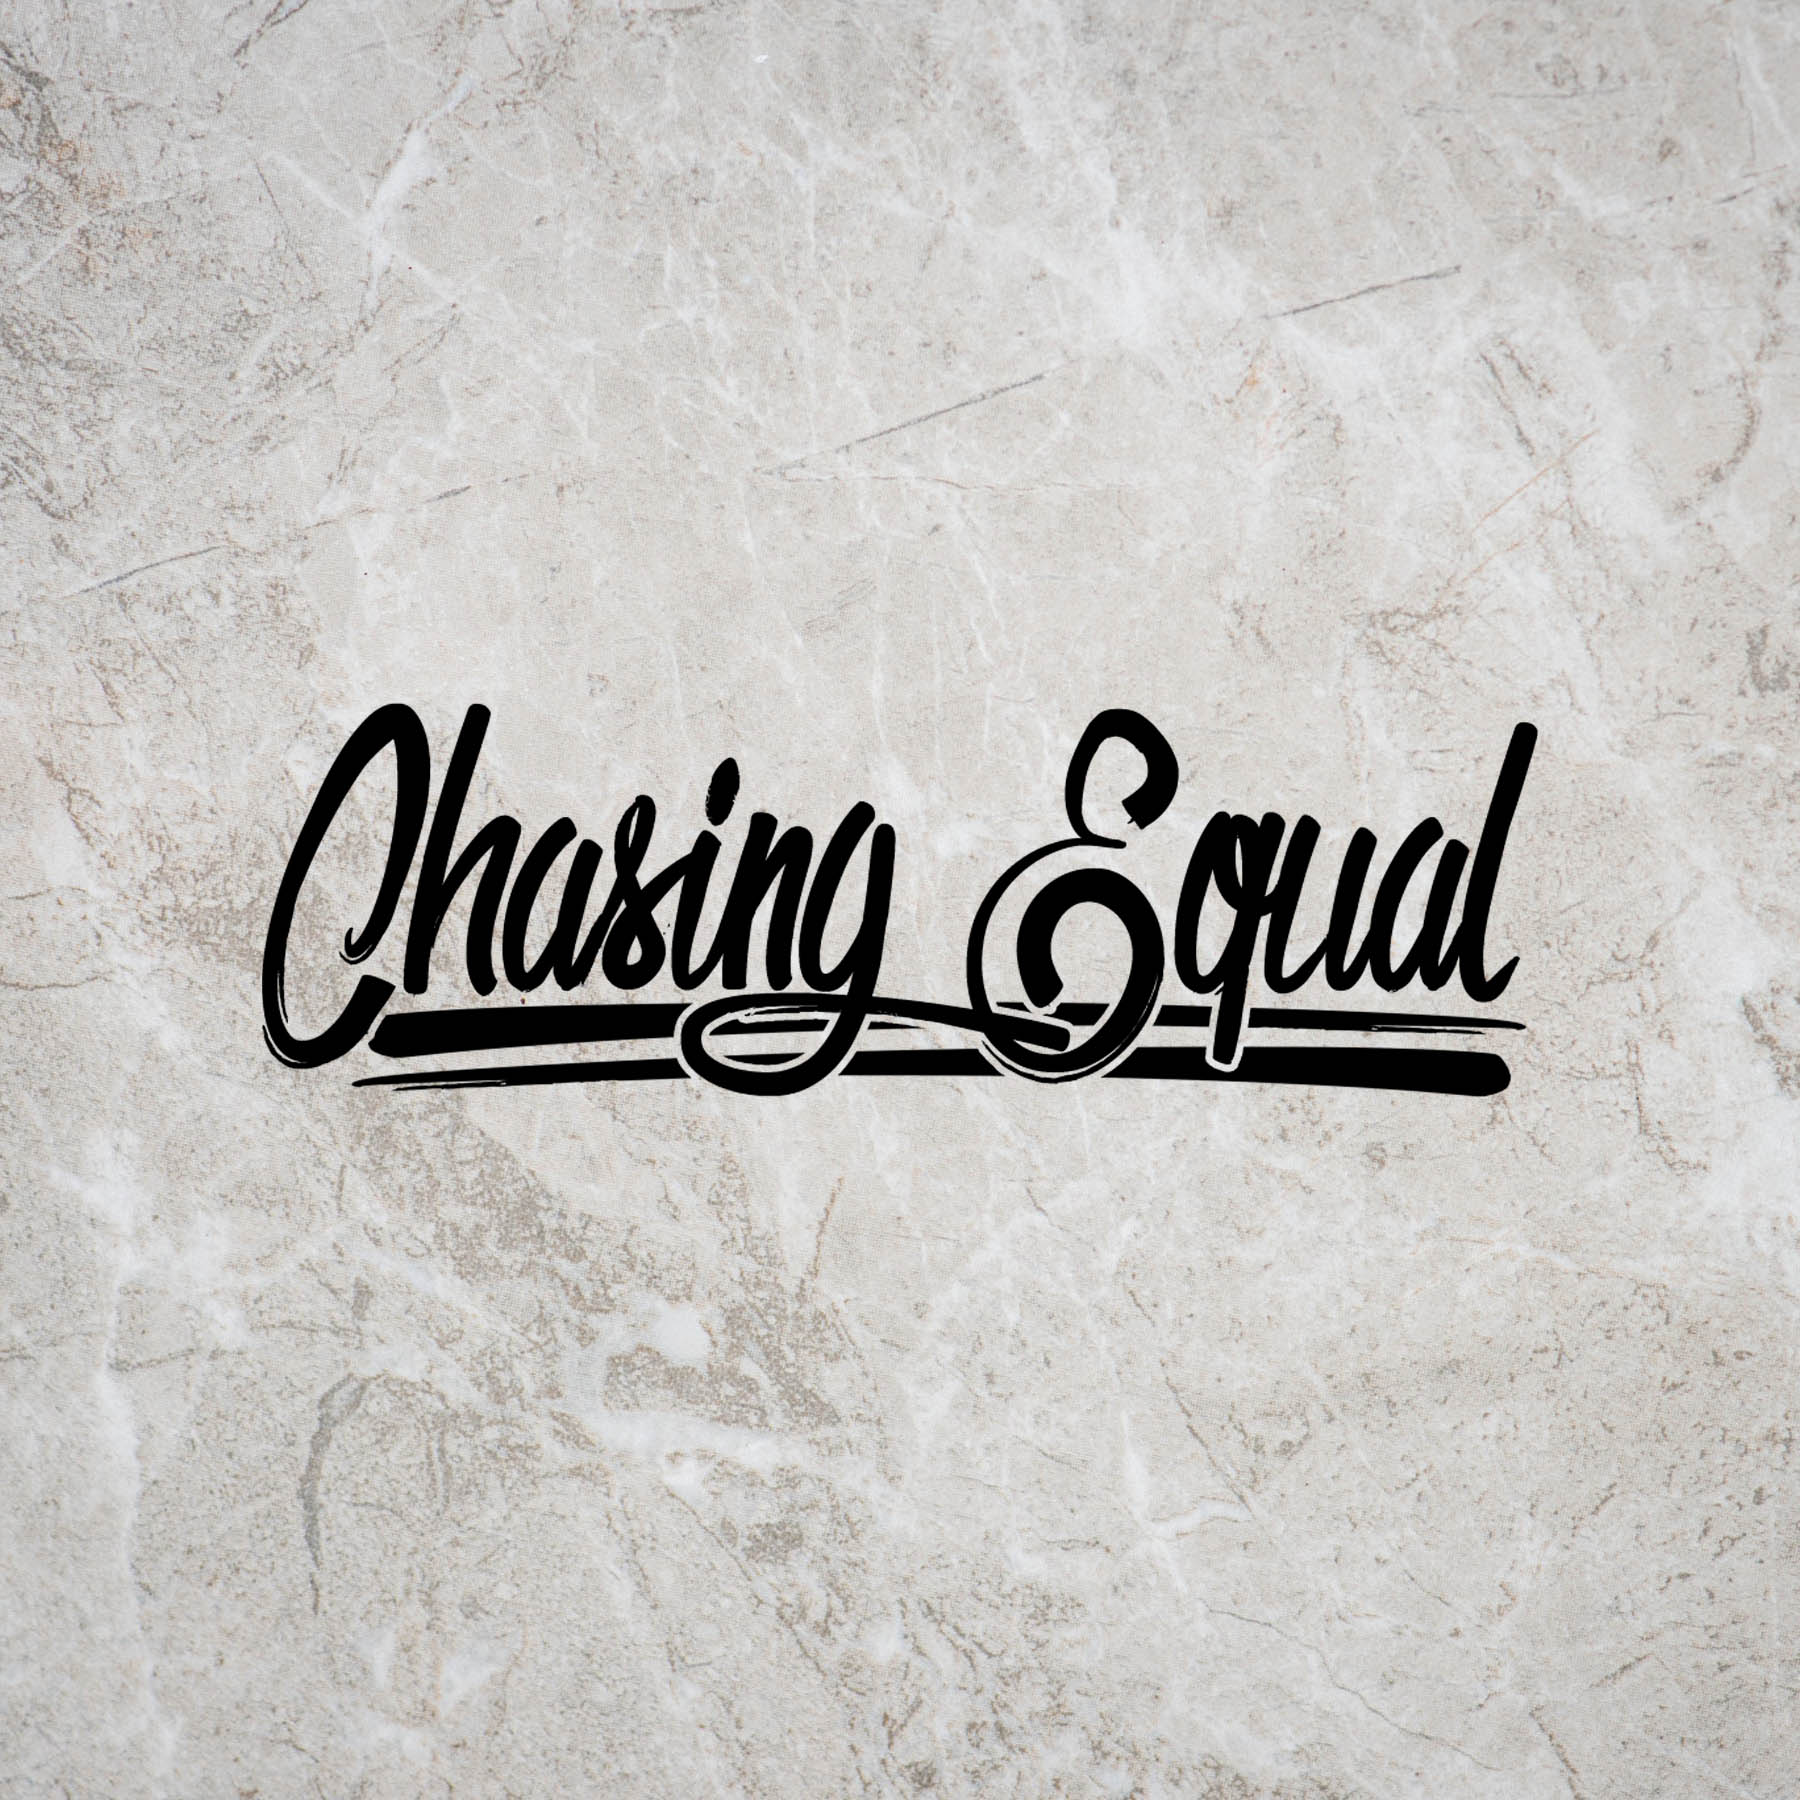 Chasing Logo - Chasing Equal Logo